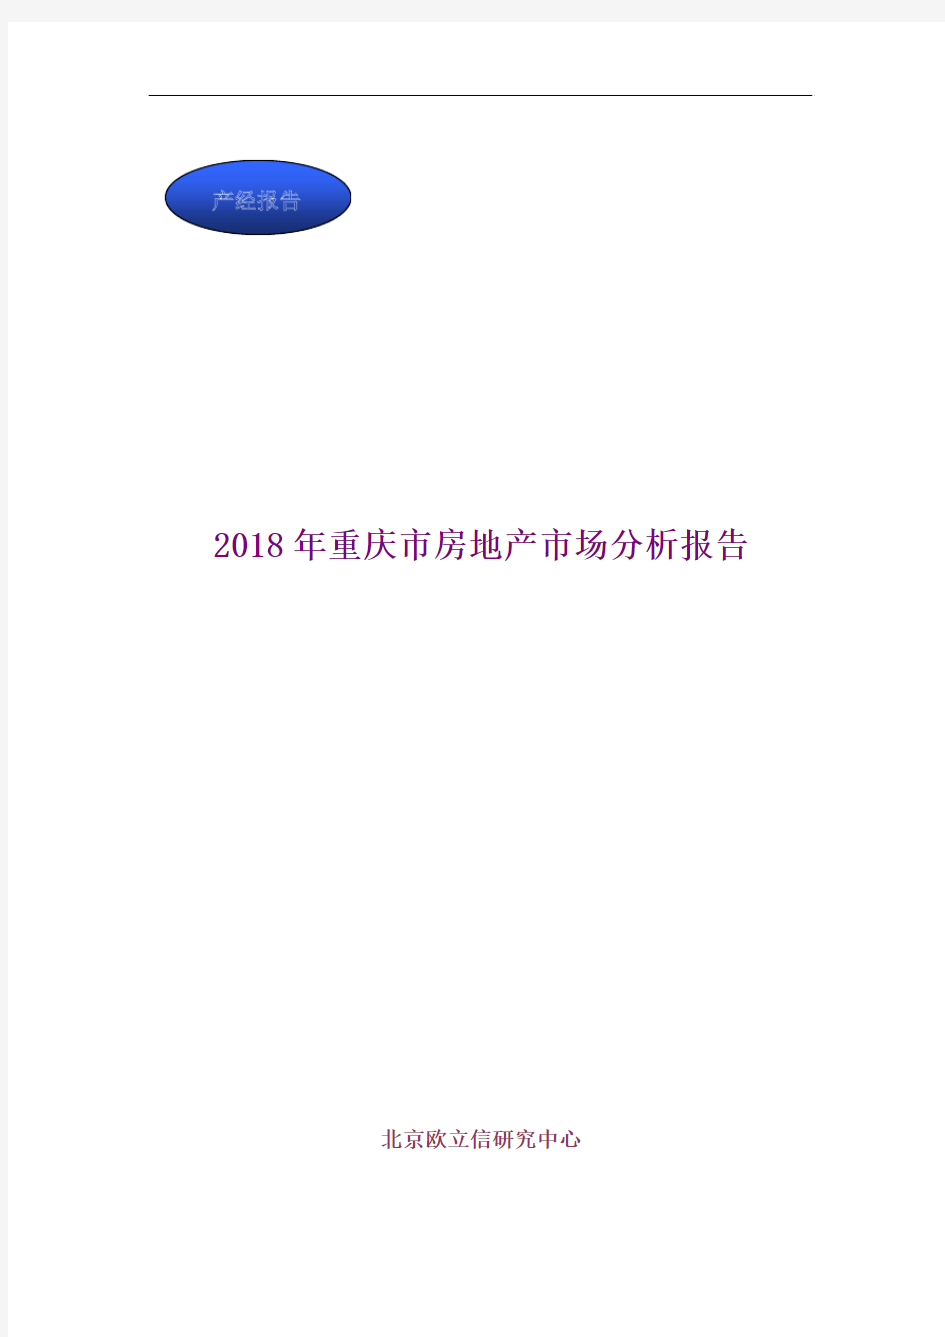 2018年重庆市房地产市场分析报告